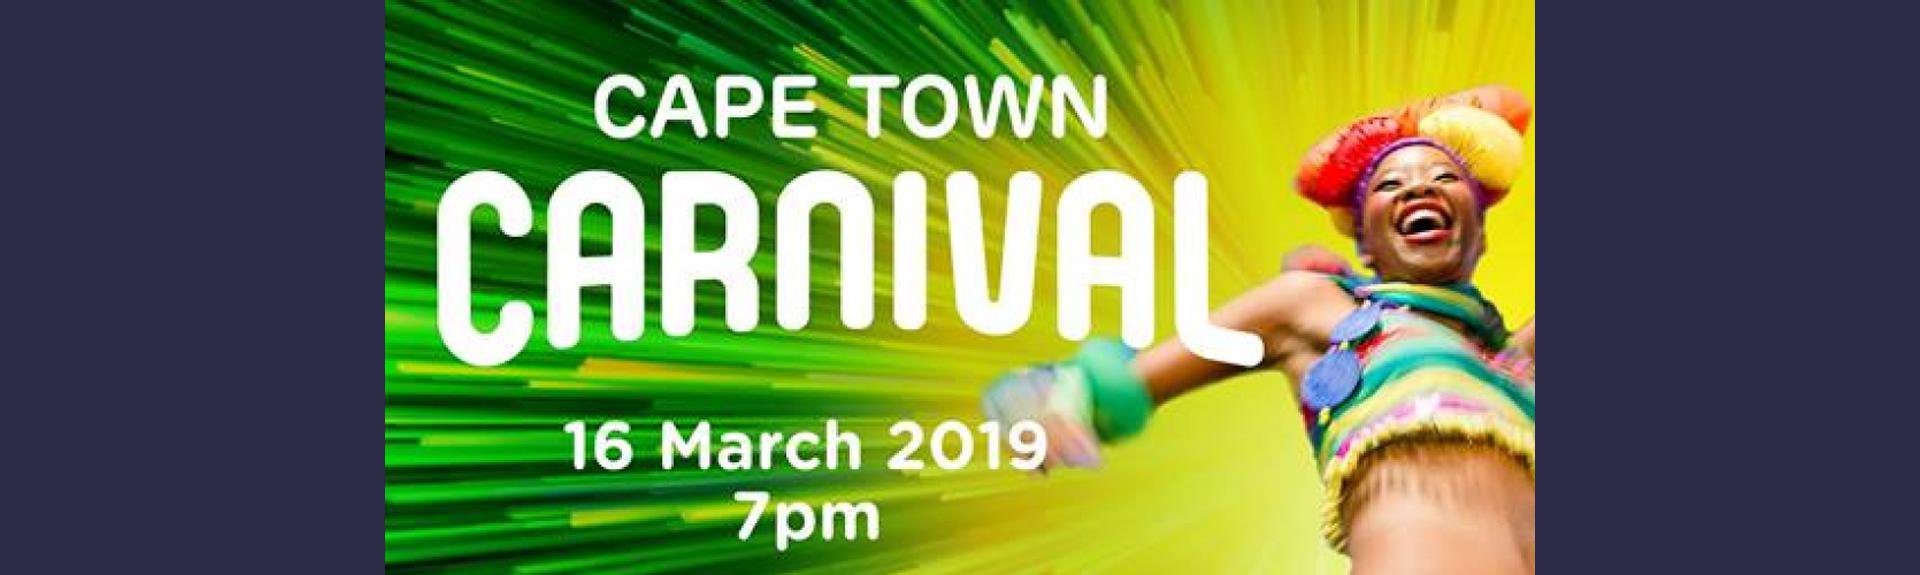 Cape Town Carnival 2019